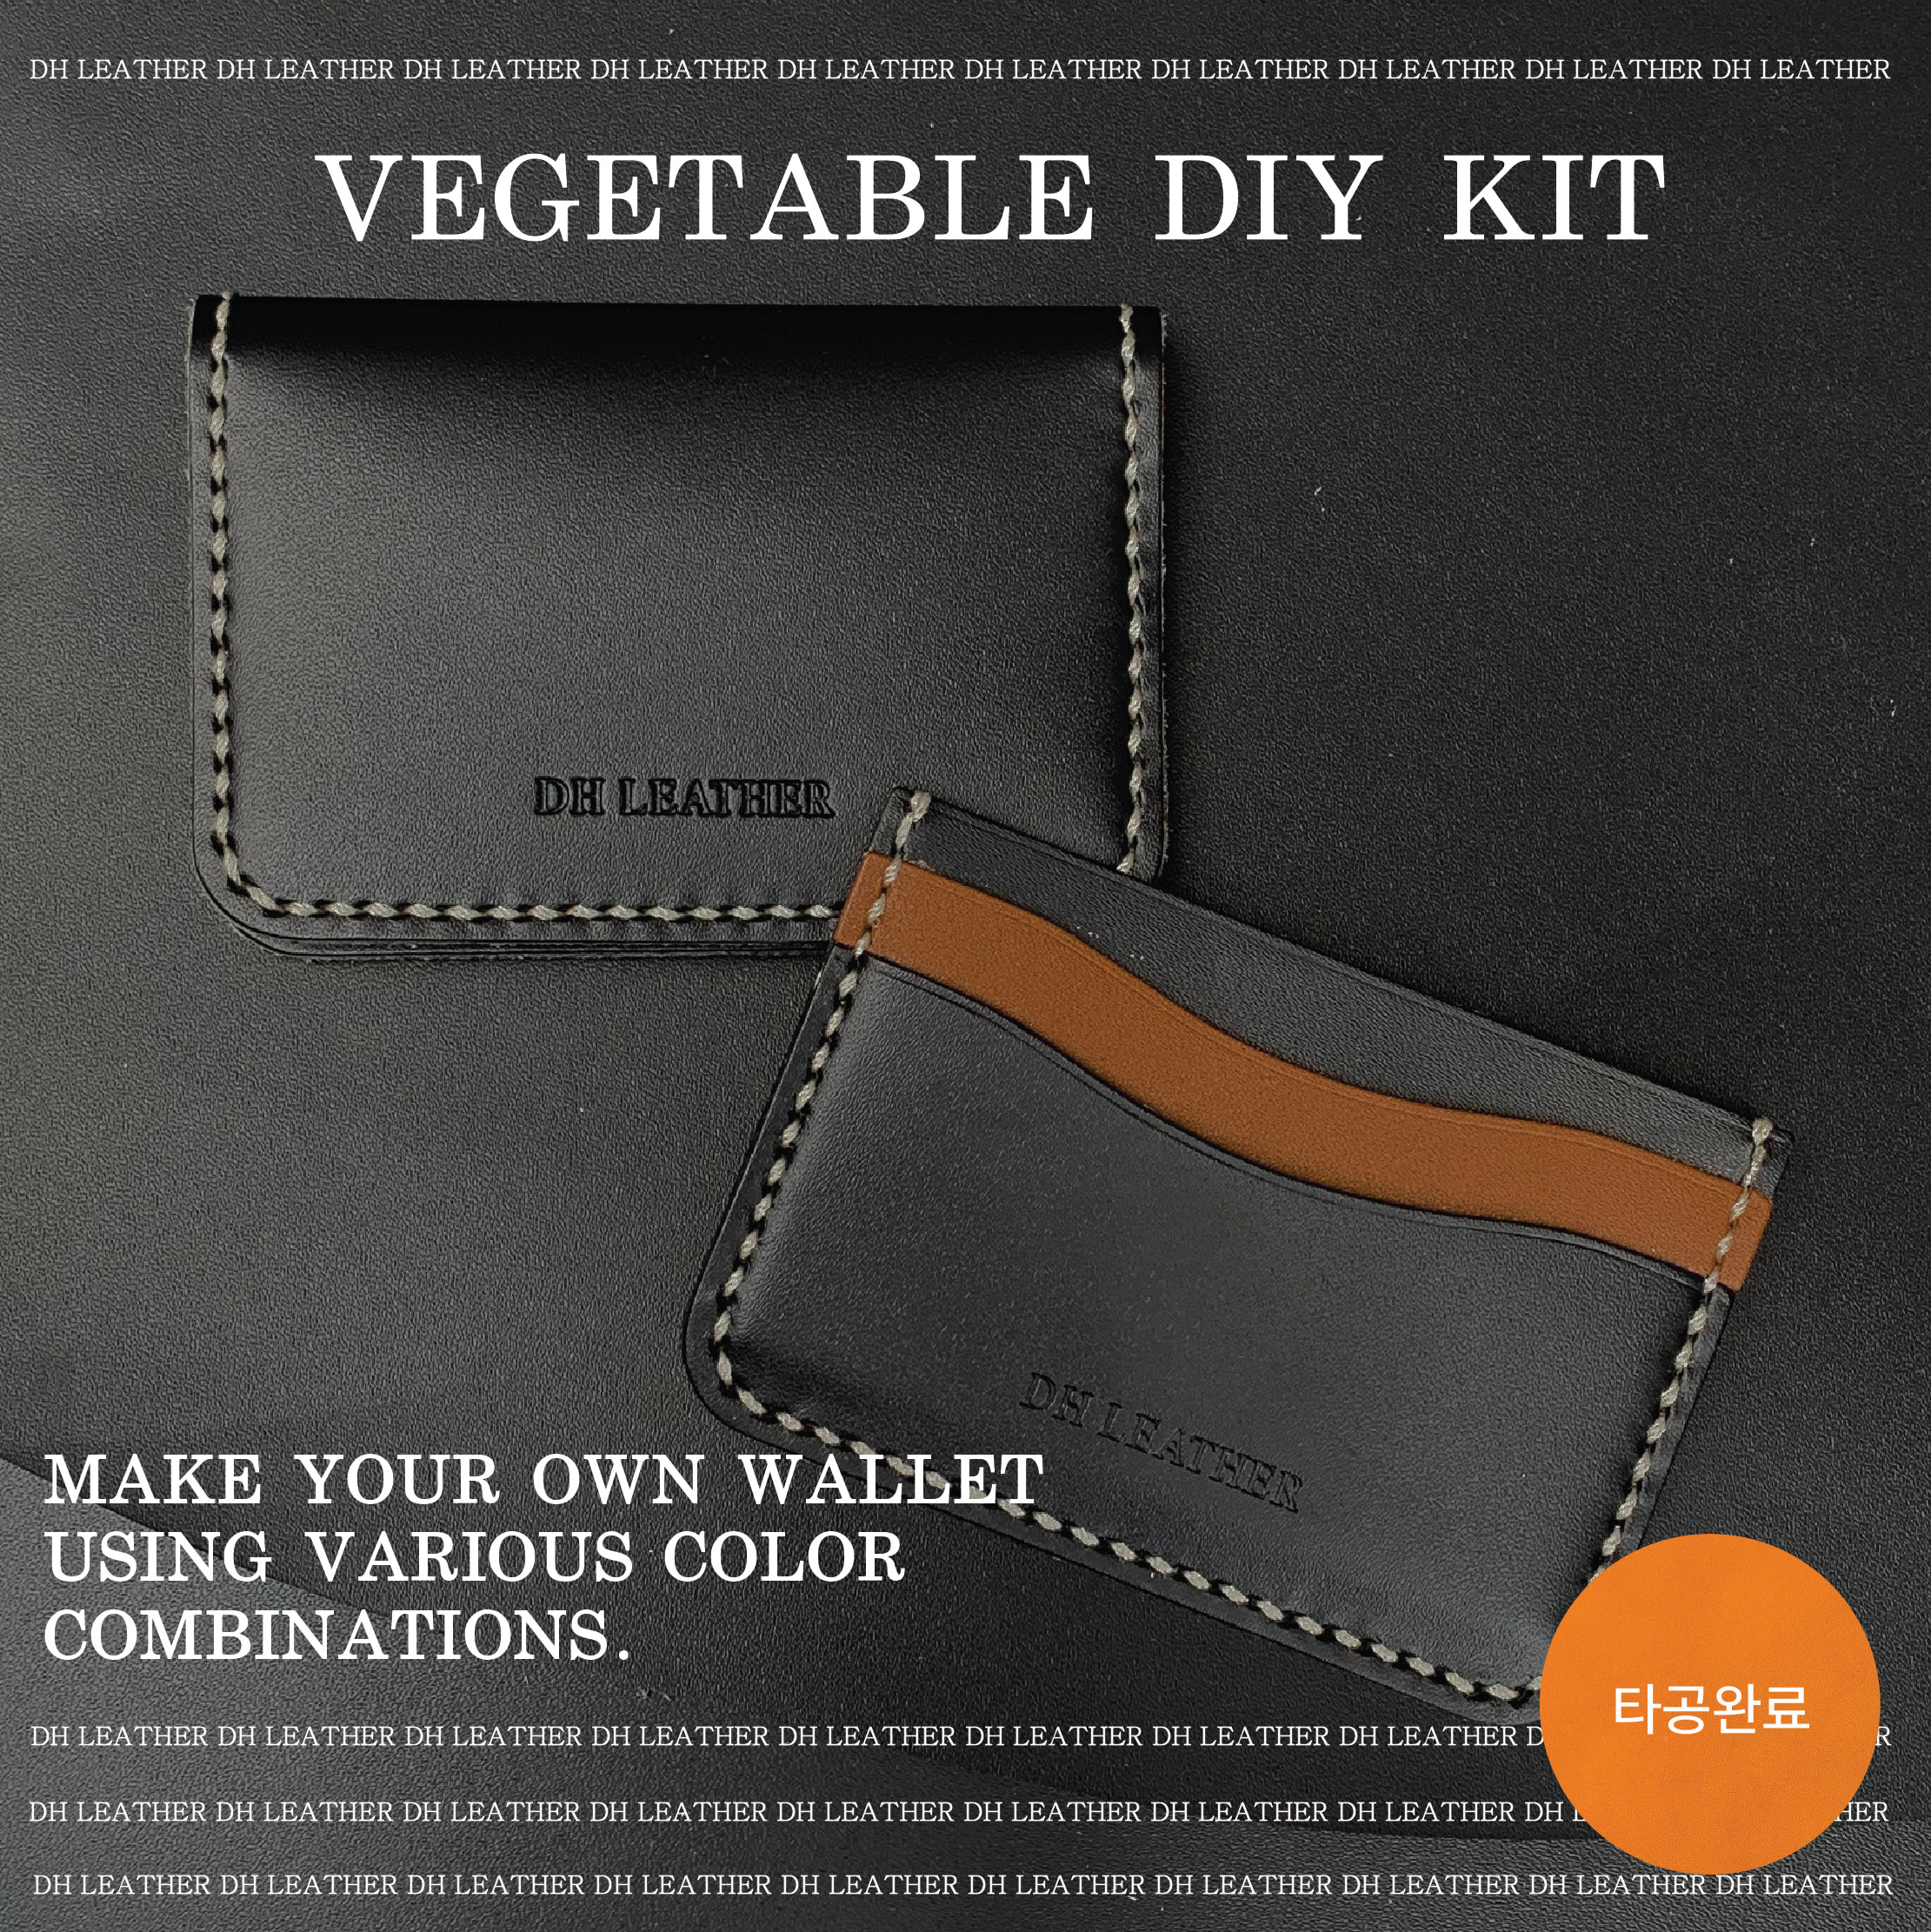 타공 폴딩/포켓 카드지갑 DIY KIT - 베지터블 바케타 블랙 (이태리) standard